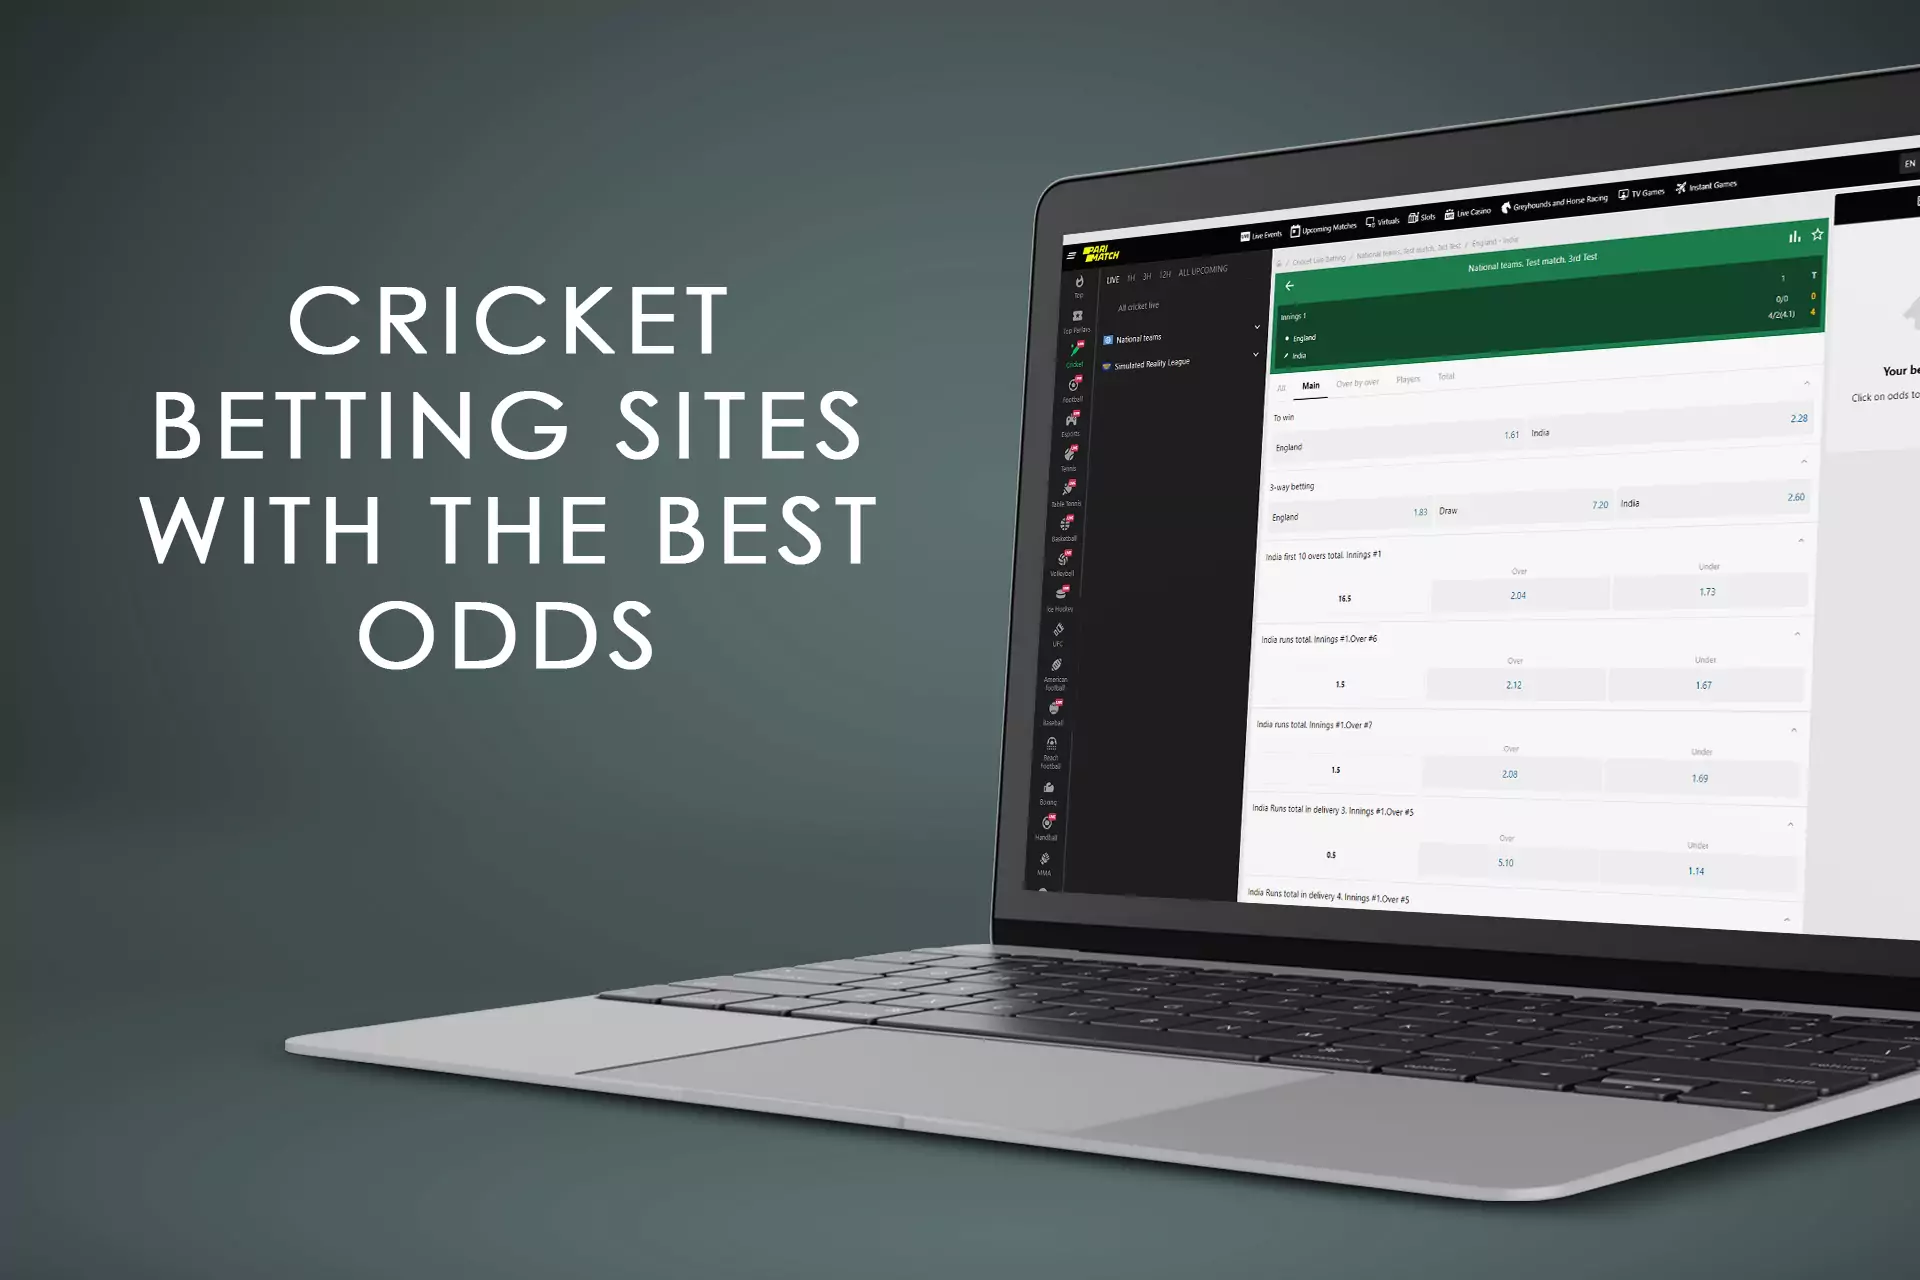 सर्वश्रेष्ठ ऑड्स के साथ क्रिकेट सट्टेबाजी साइटों की हमारी रैंकिंग का अन्वेषण करें।